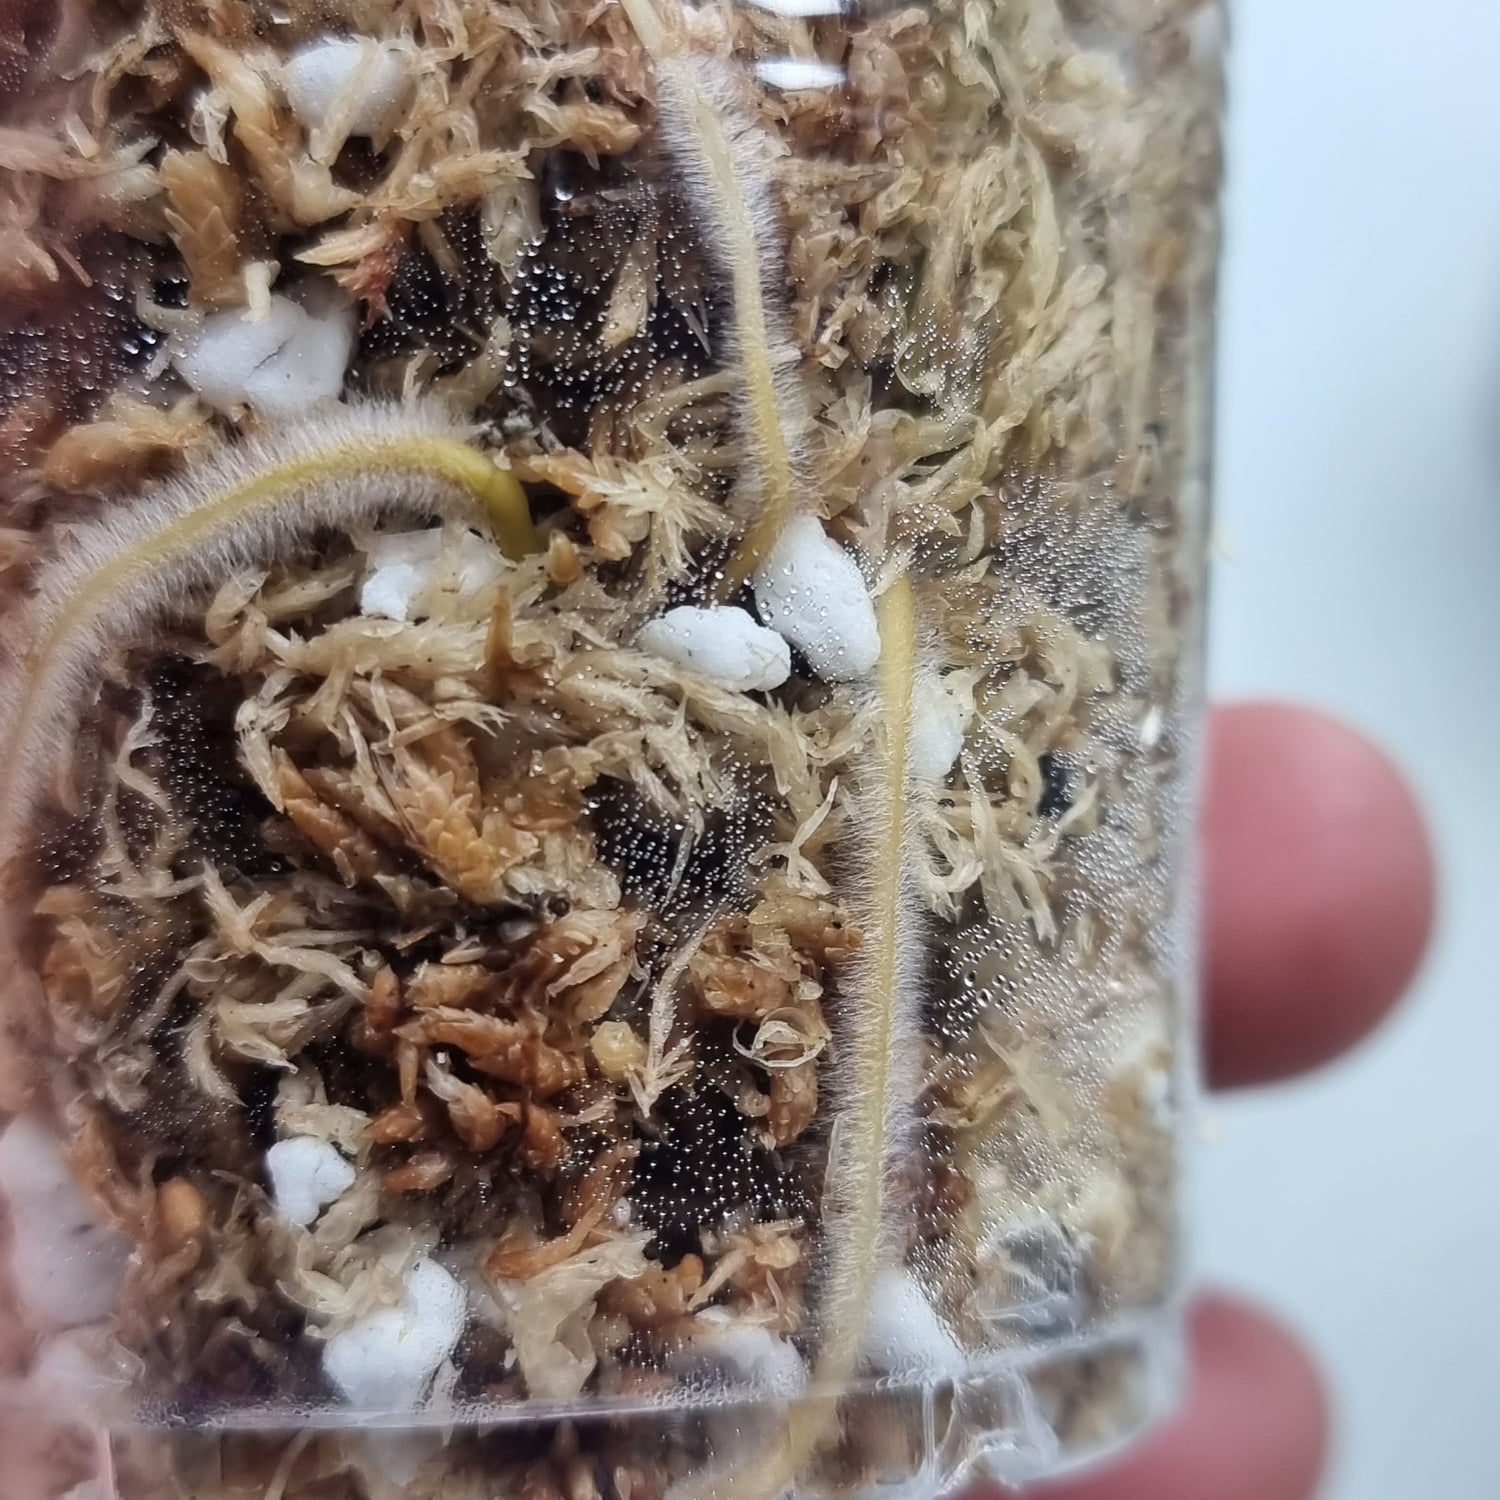 rare Syngonium Confetti for sale in Perth Australia